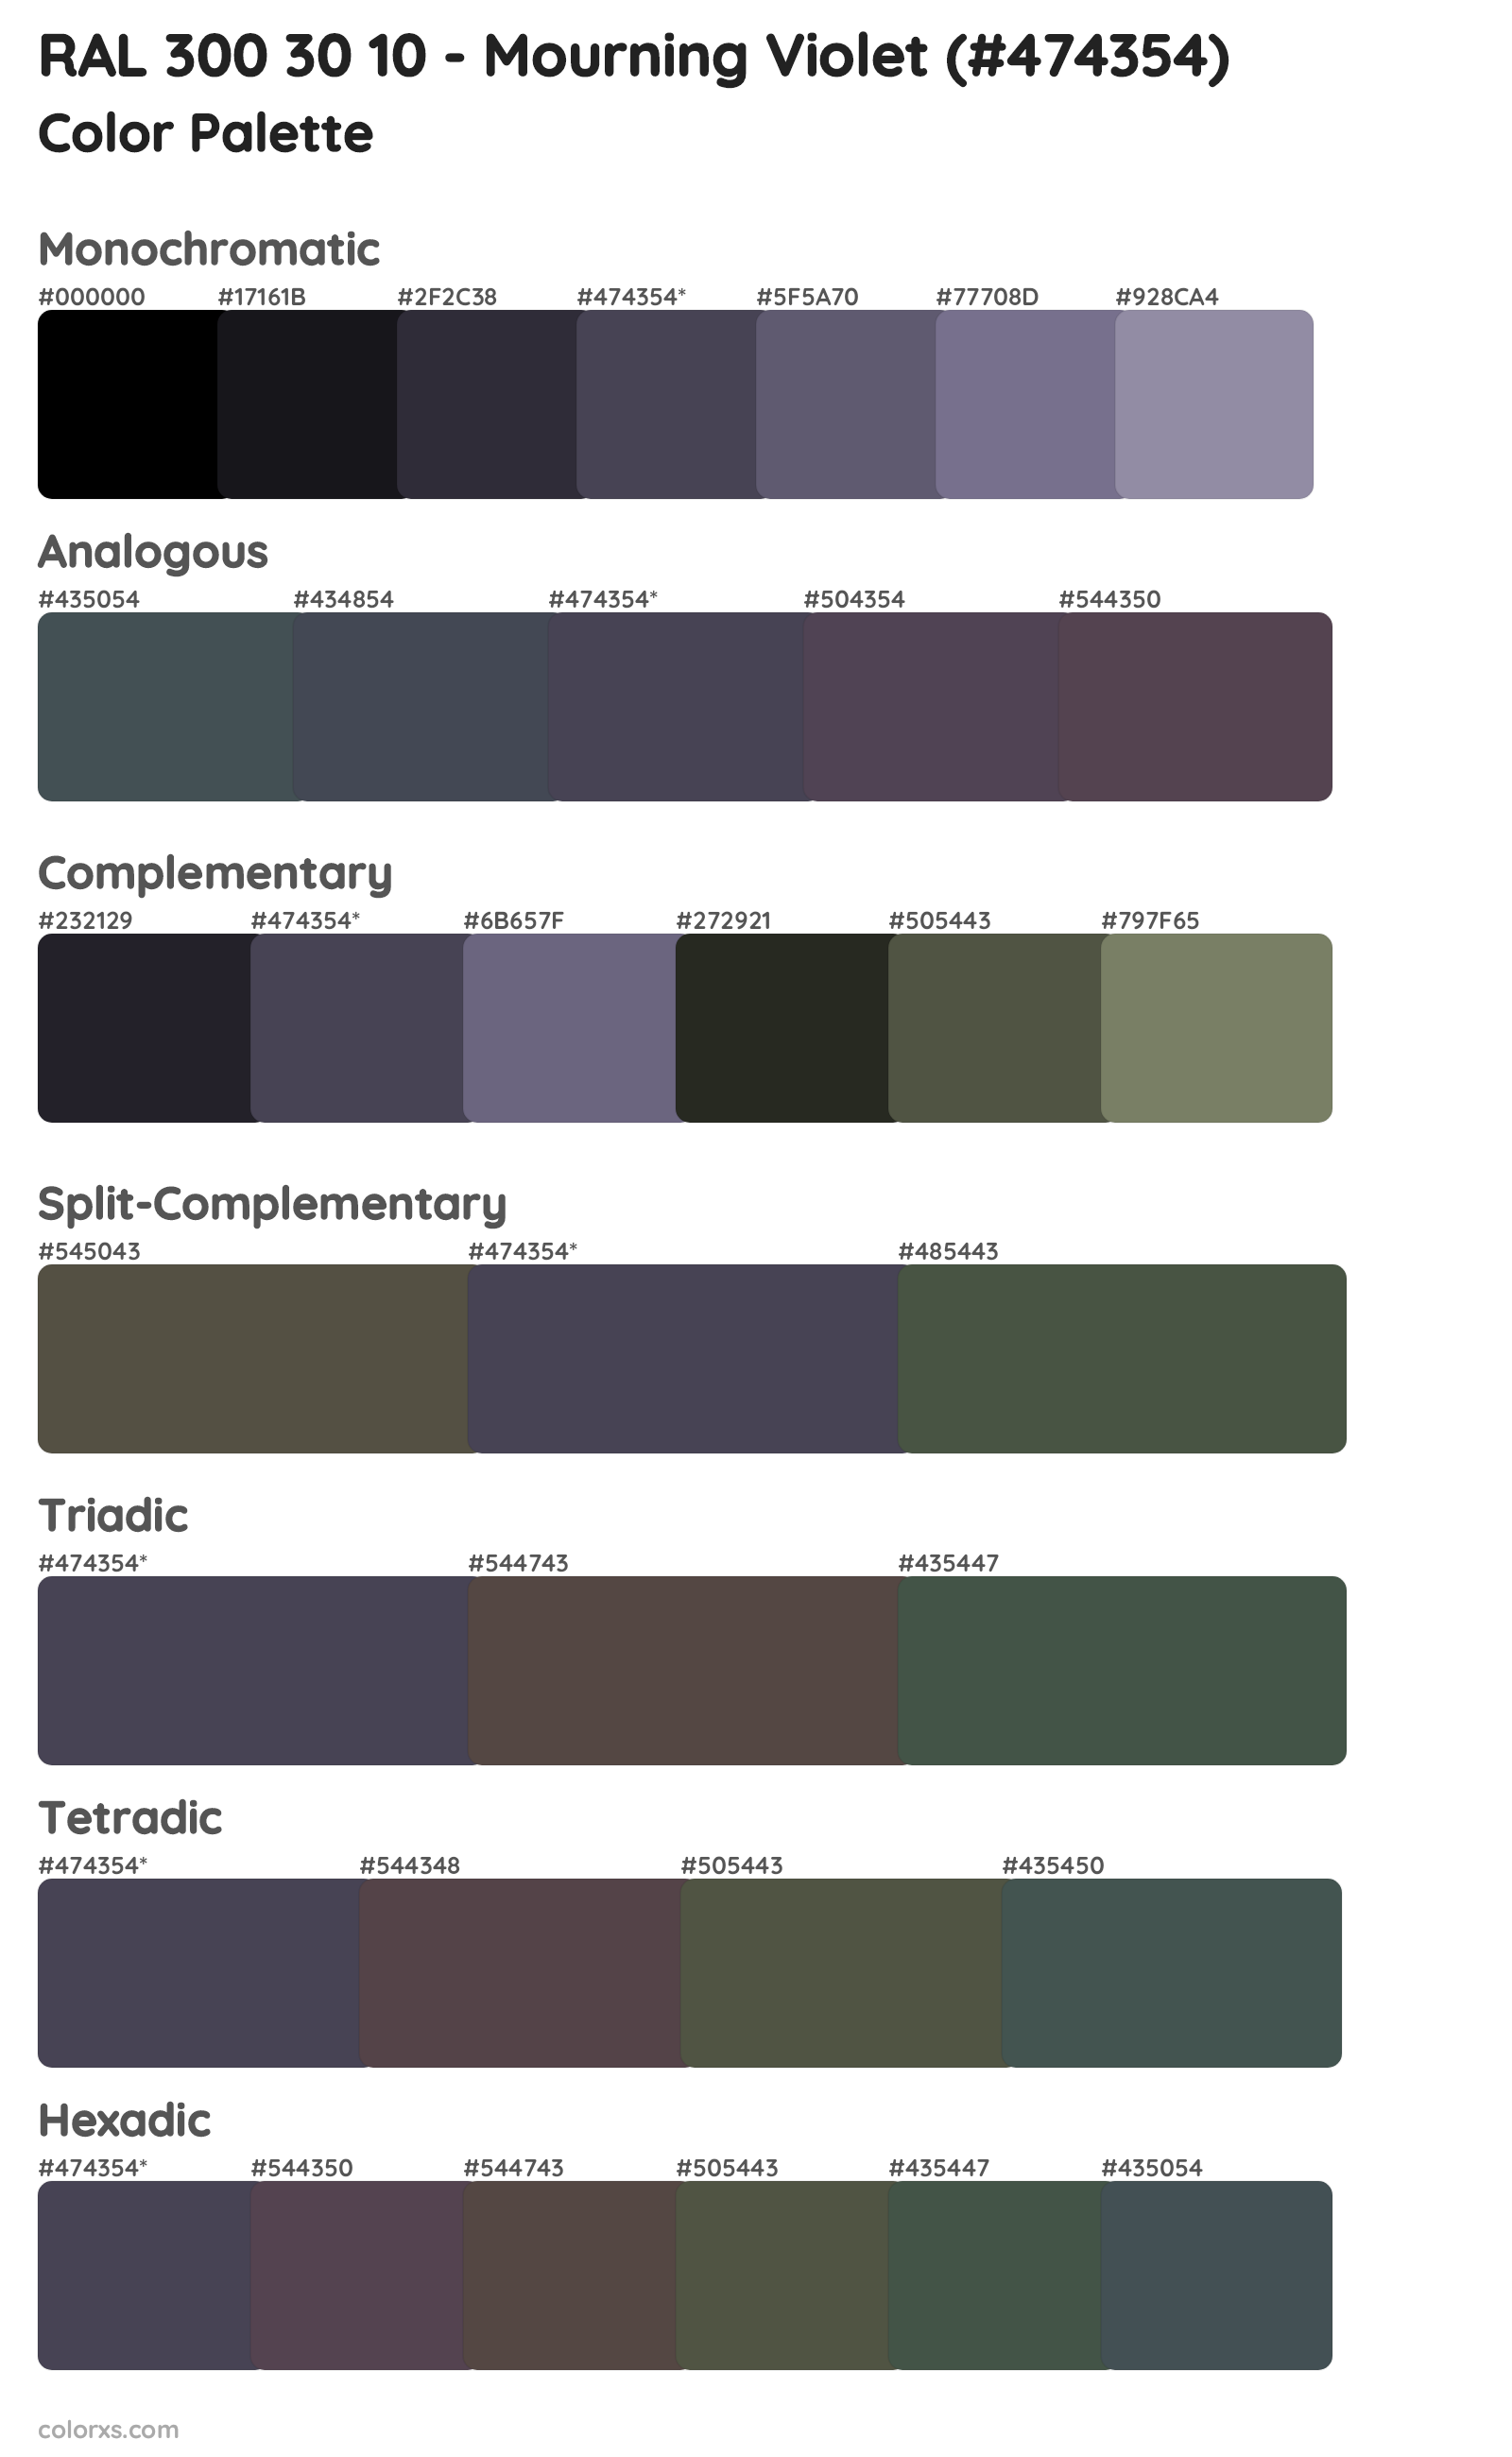 RAL 300 30 10 - Mourning Violet Color Scheme Palettes